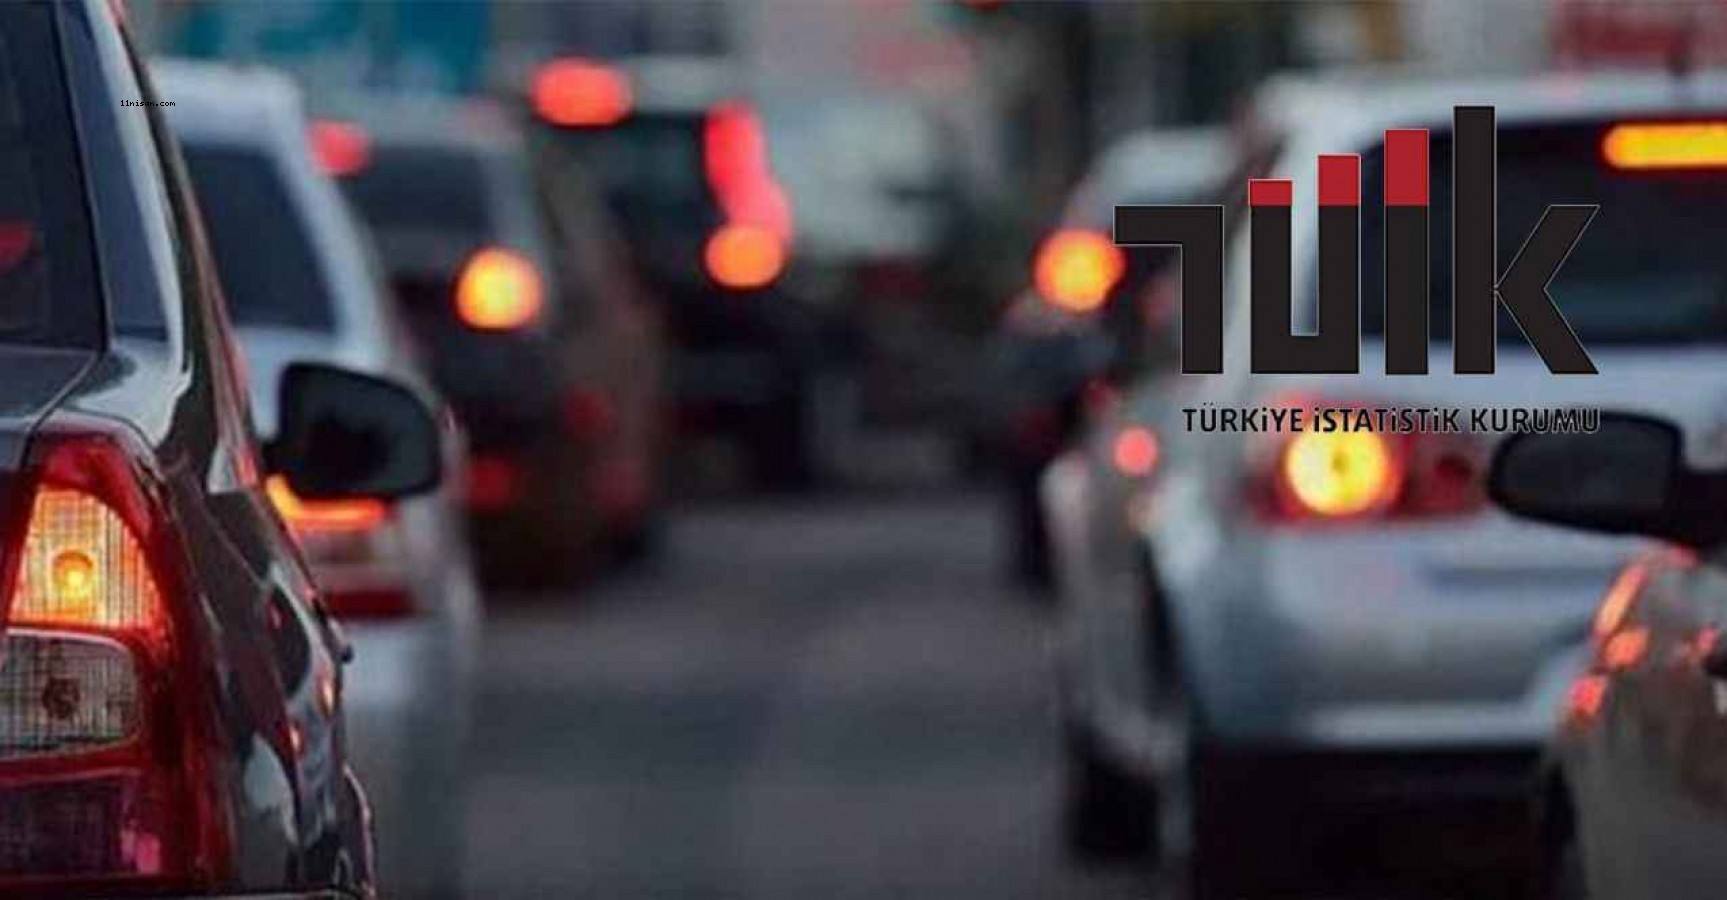 Urfa'da trafiğe kayıtlı araç sayısı açıklandı;